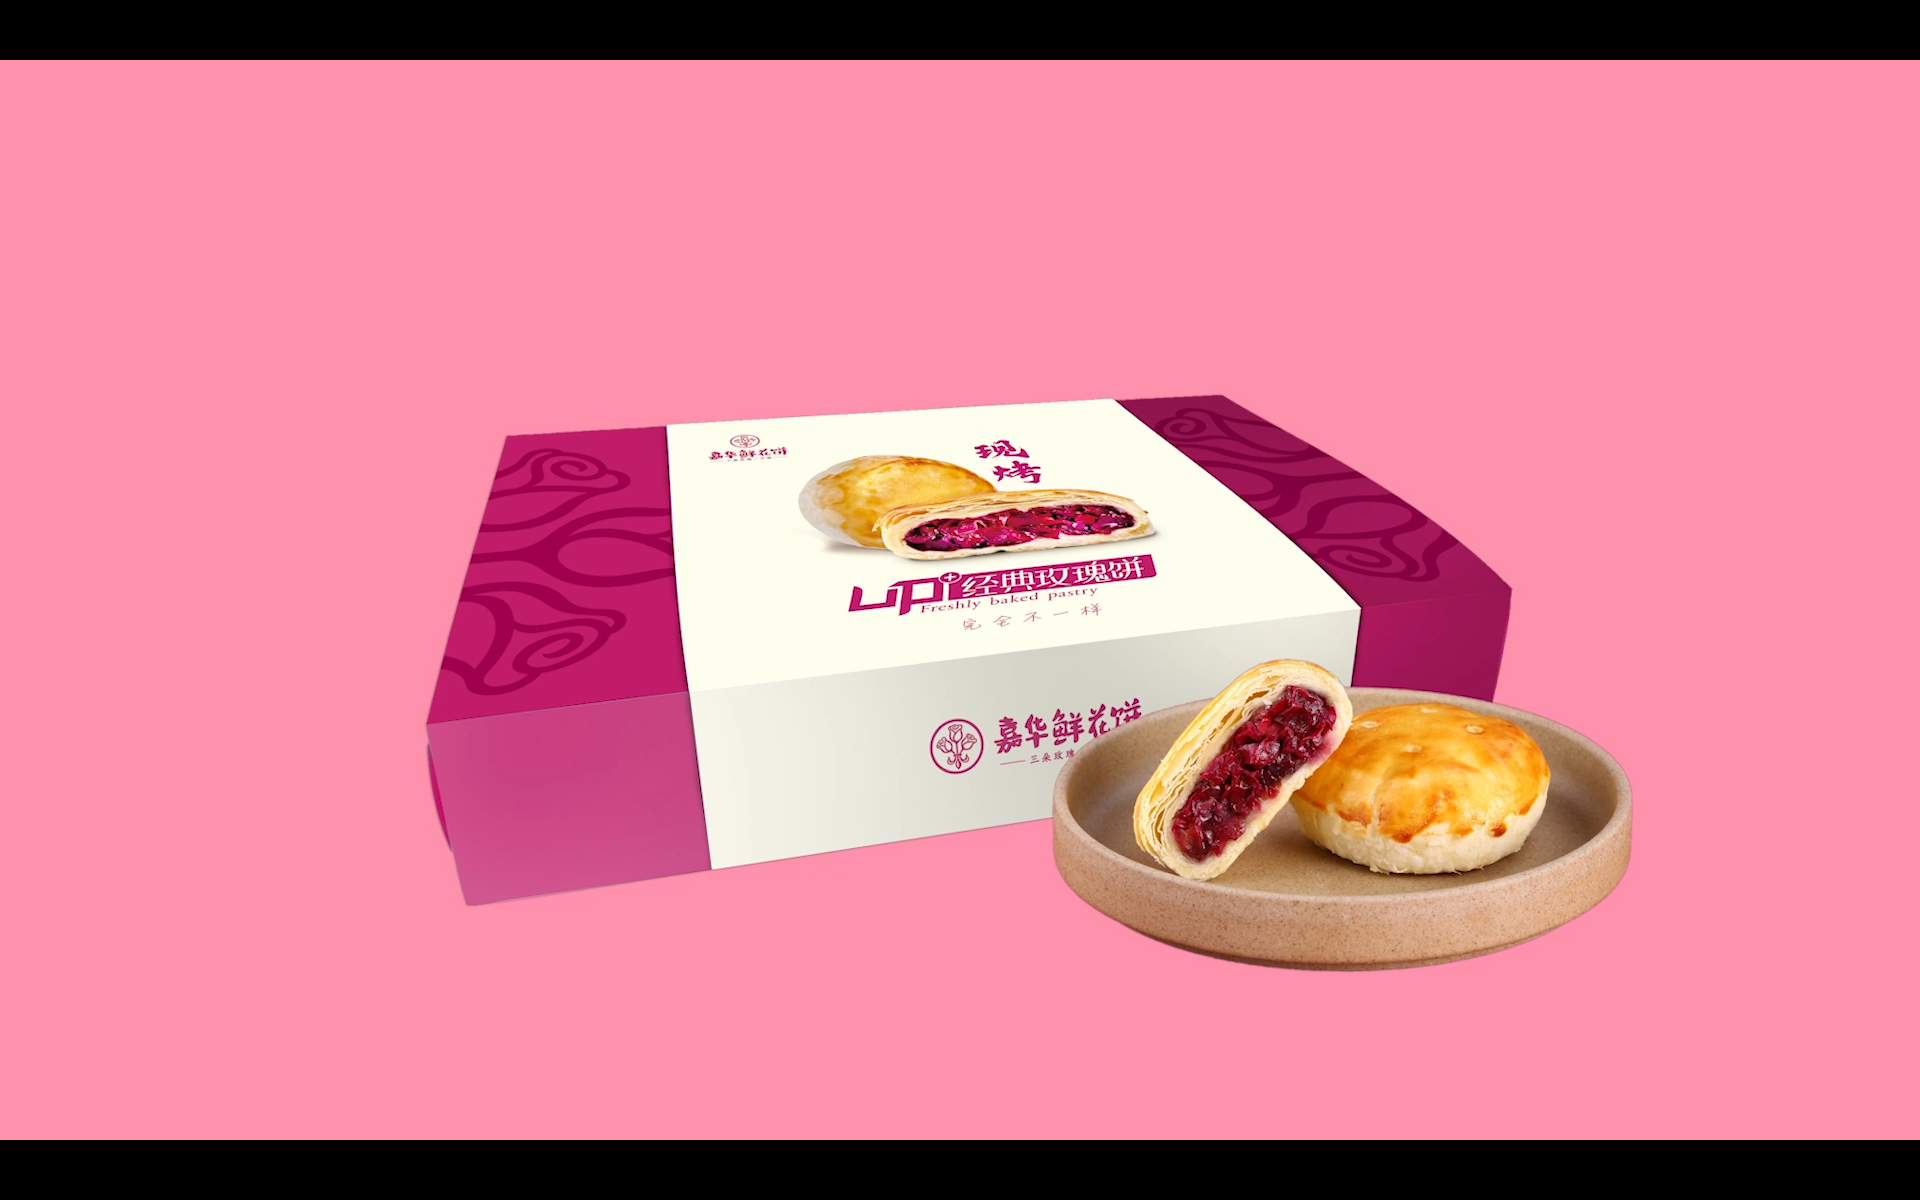 雀巢×嘉华鲜花饼推出云南限定礼盒 | Foodaily每日食品